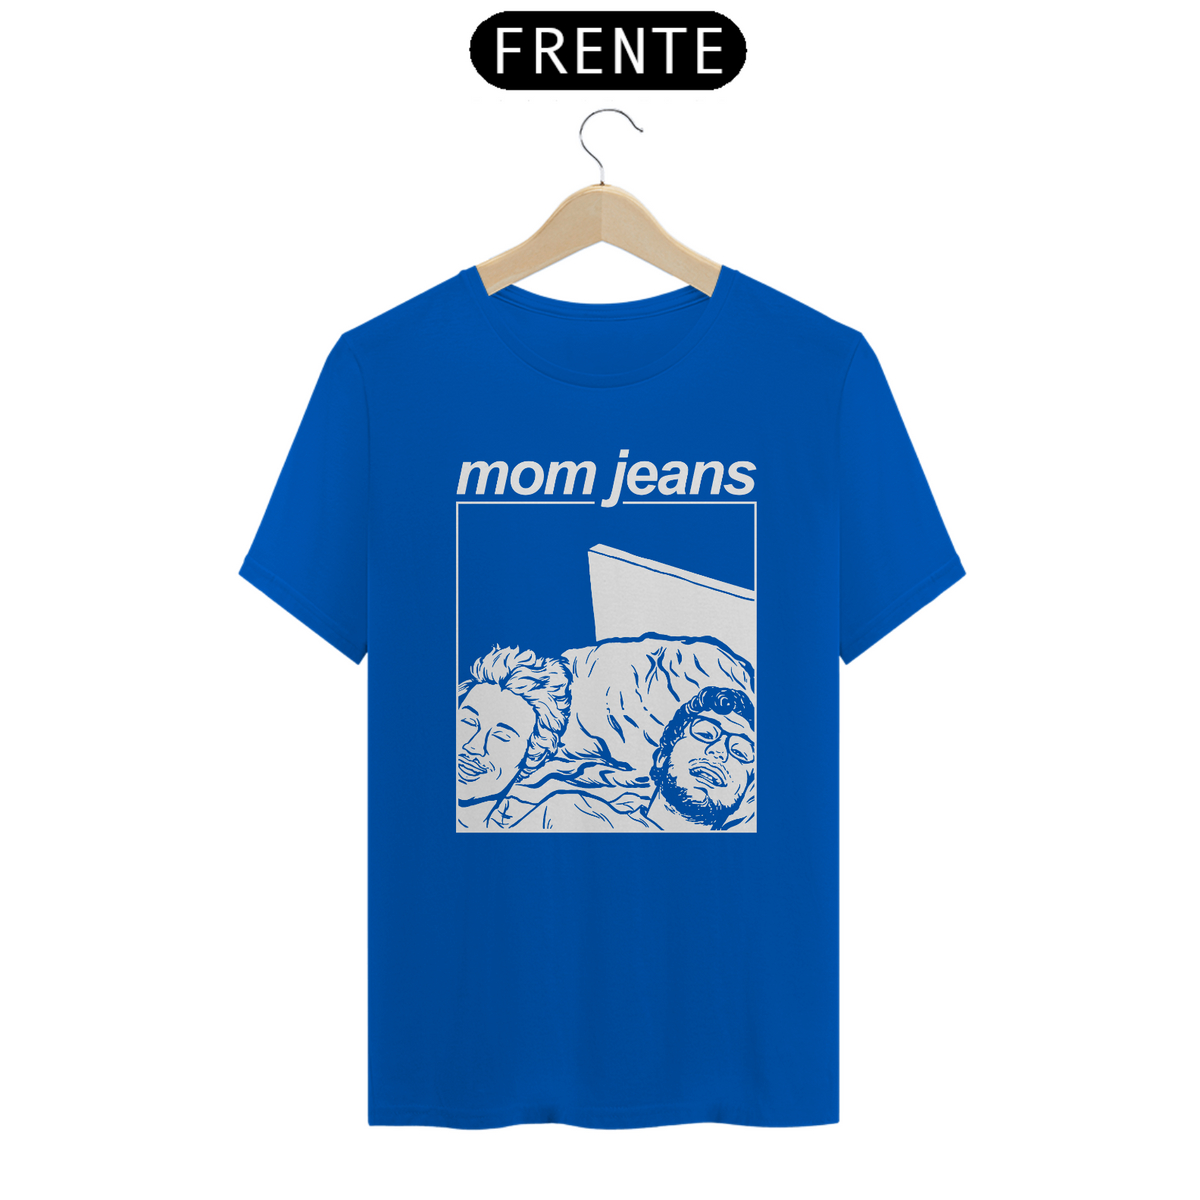 Nome do produto: MOM JEANS